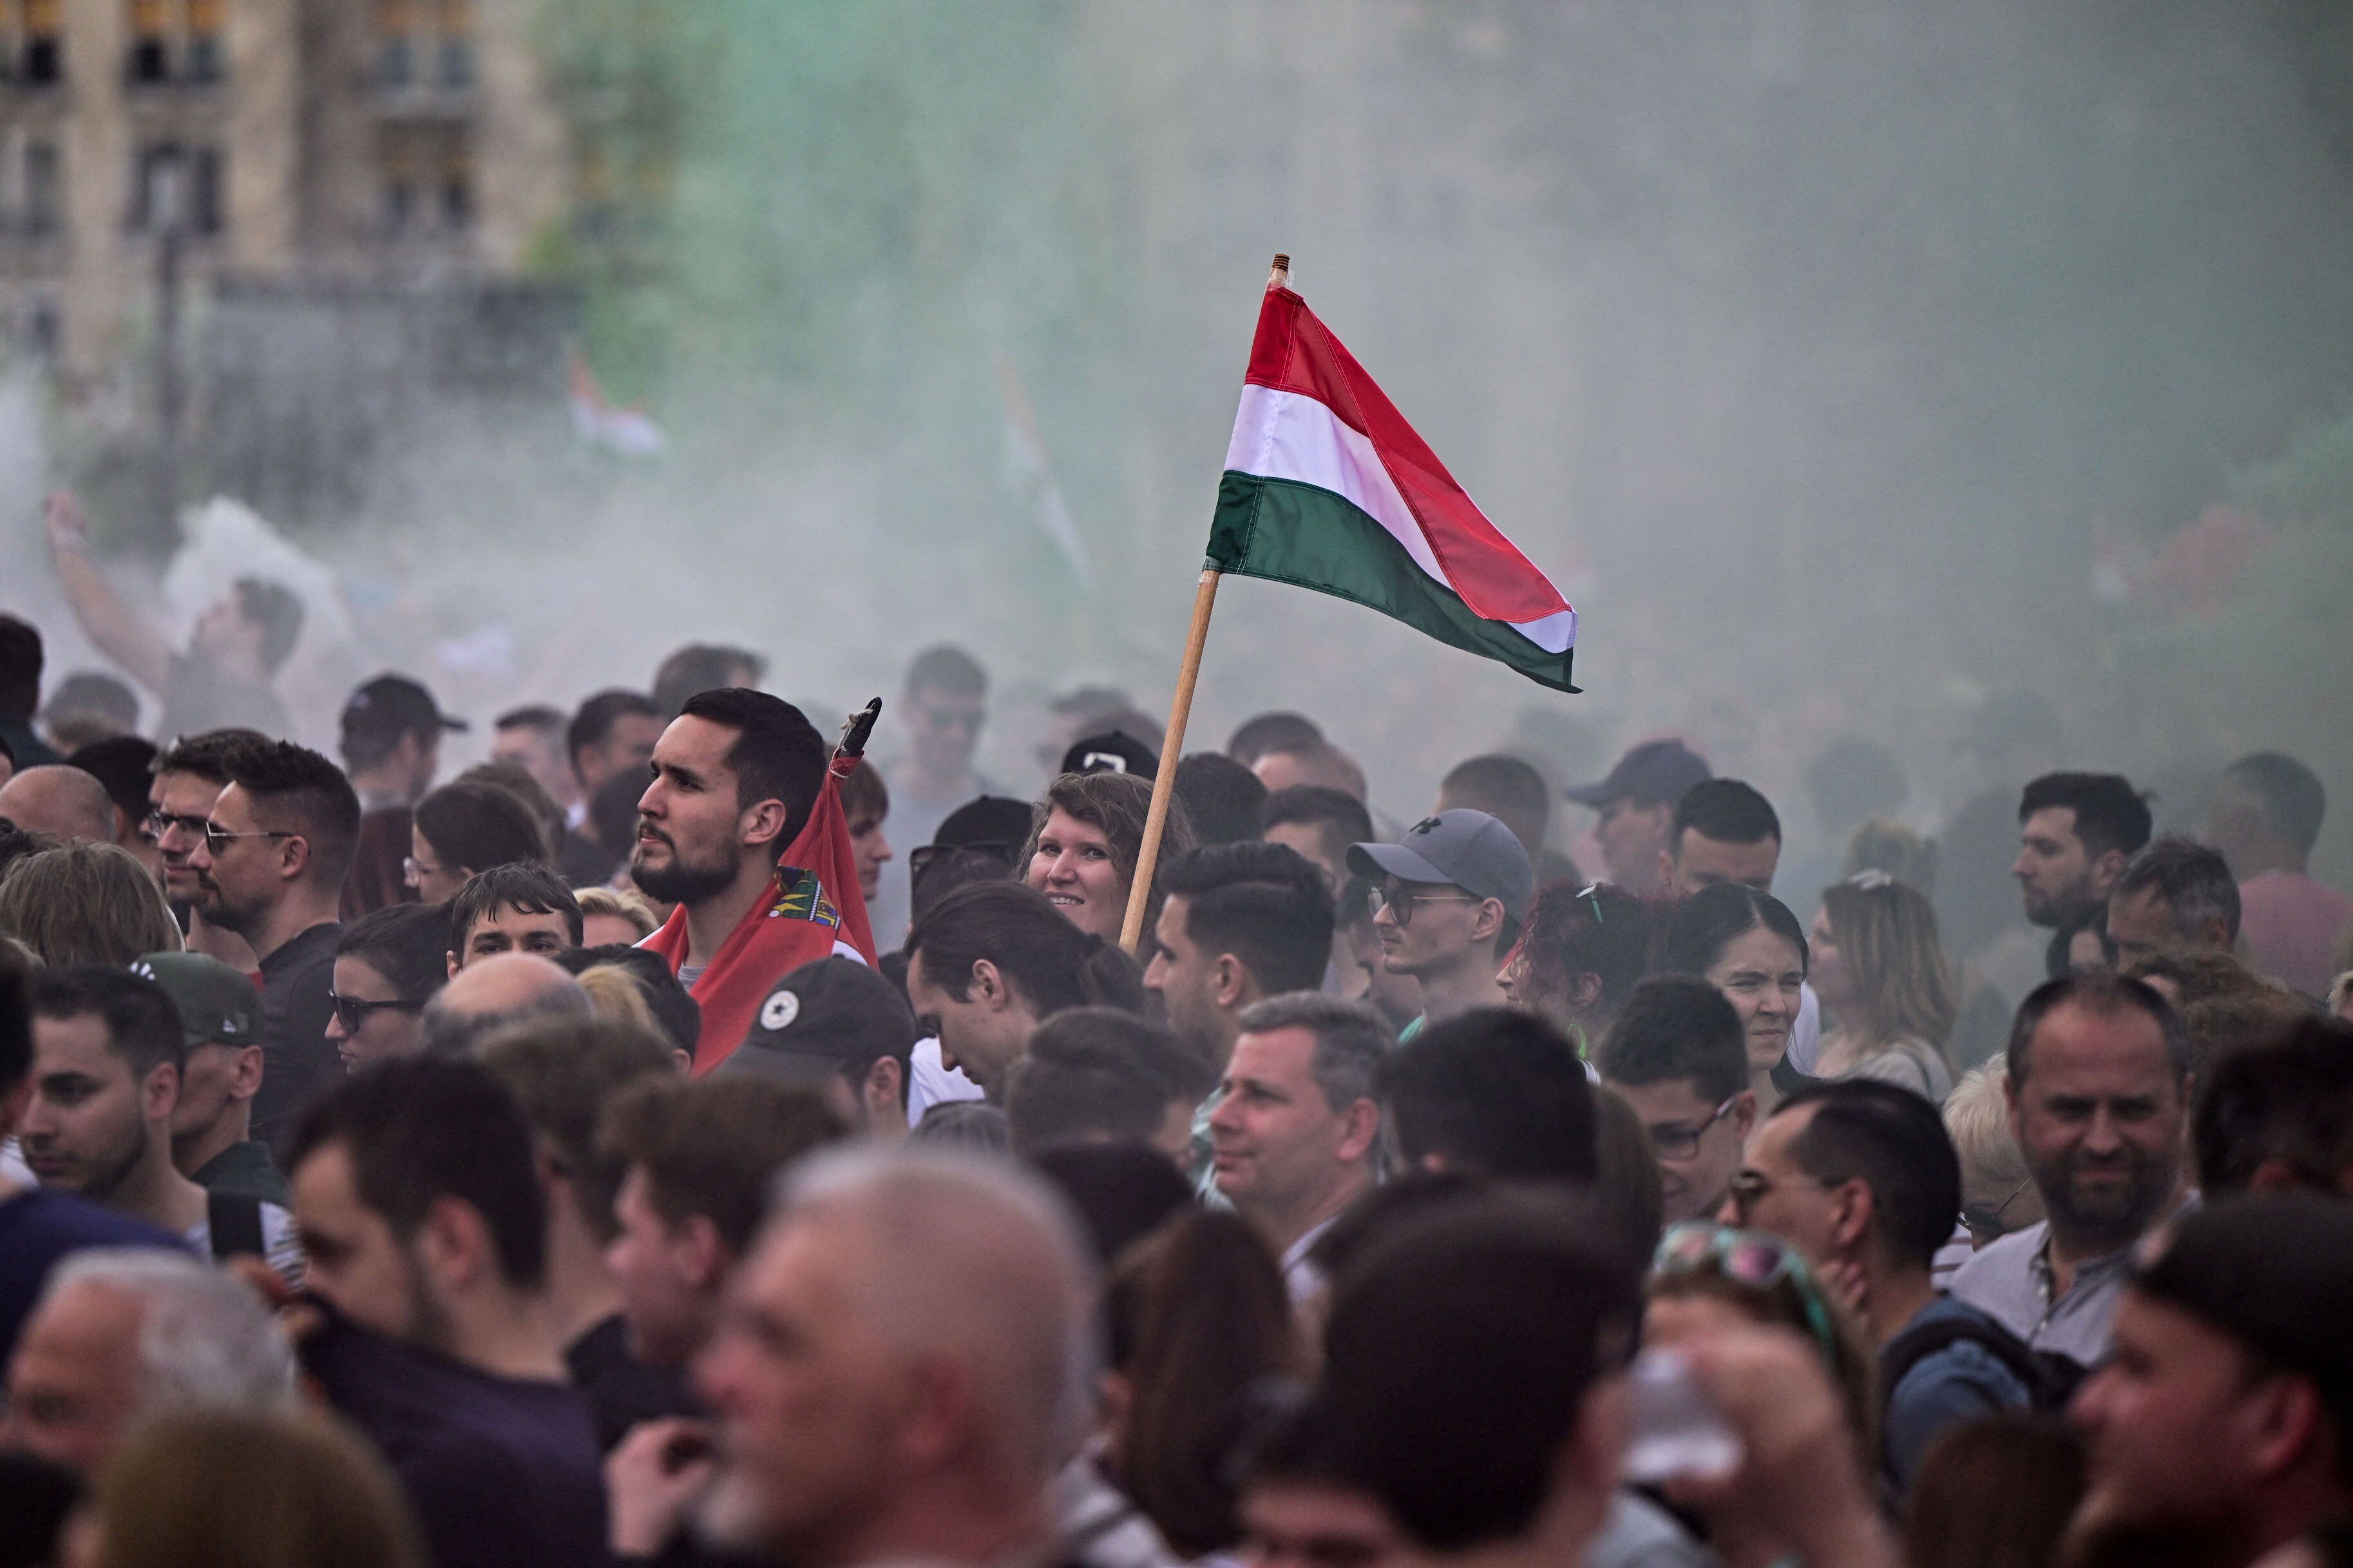 Magyar llamó al pueblo a recuperar el control de Hungría y transformarlo en un Estado democrático (REUTERS)